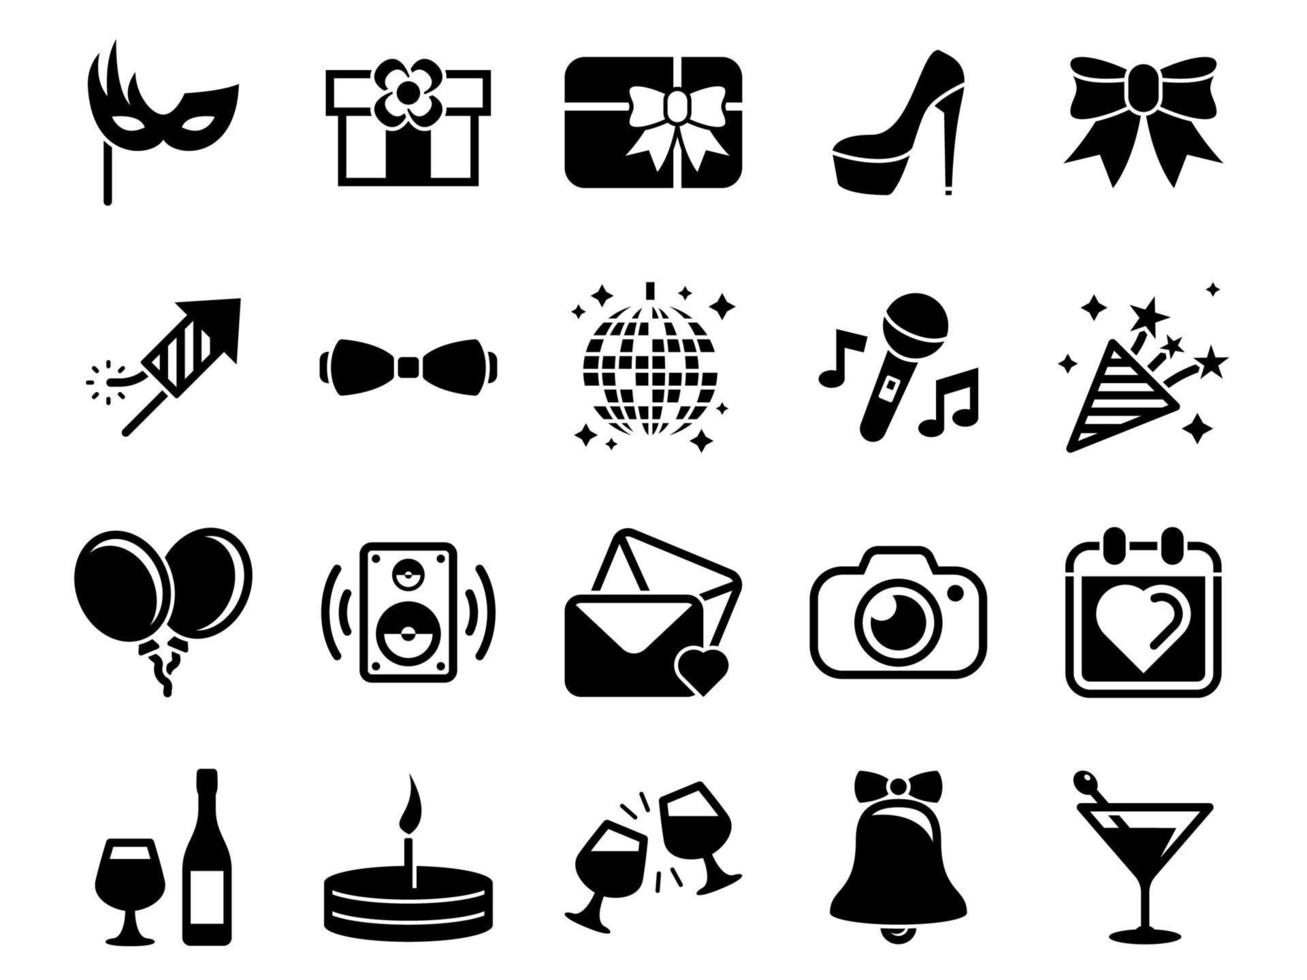 conjunto de iconos simples en una fiesta temática, cumpleaños, vacaciones, vector, diseño, colección, plano, signo, símbolo, elemento, objeto, ilustración. iconos negros aislados sobre fondo blanco vector